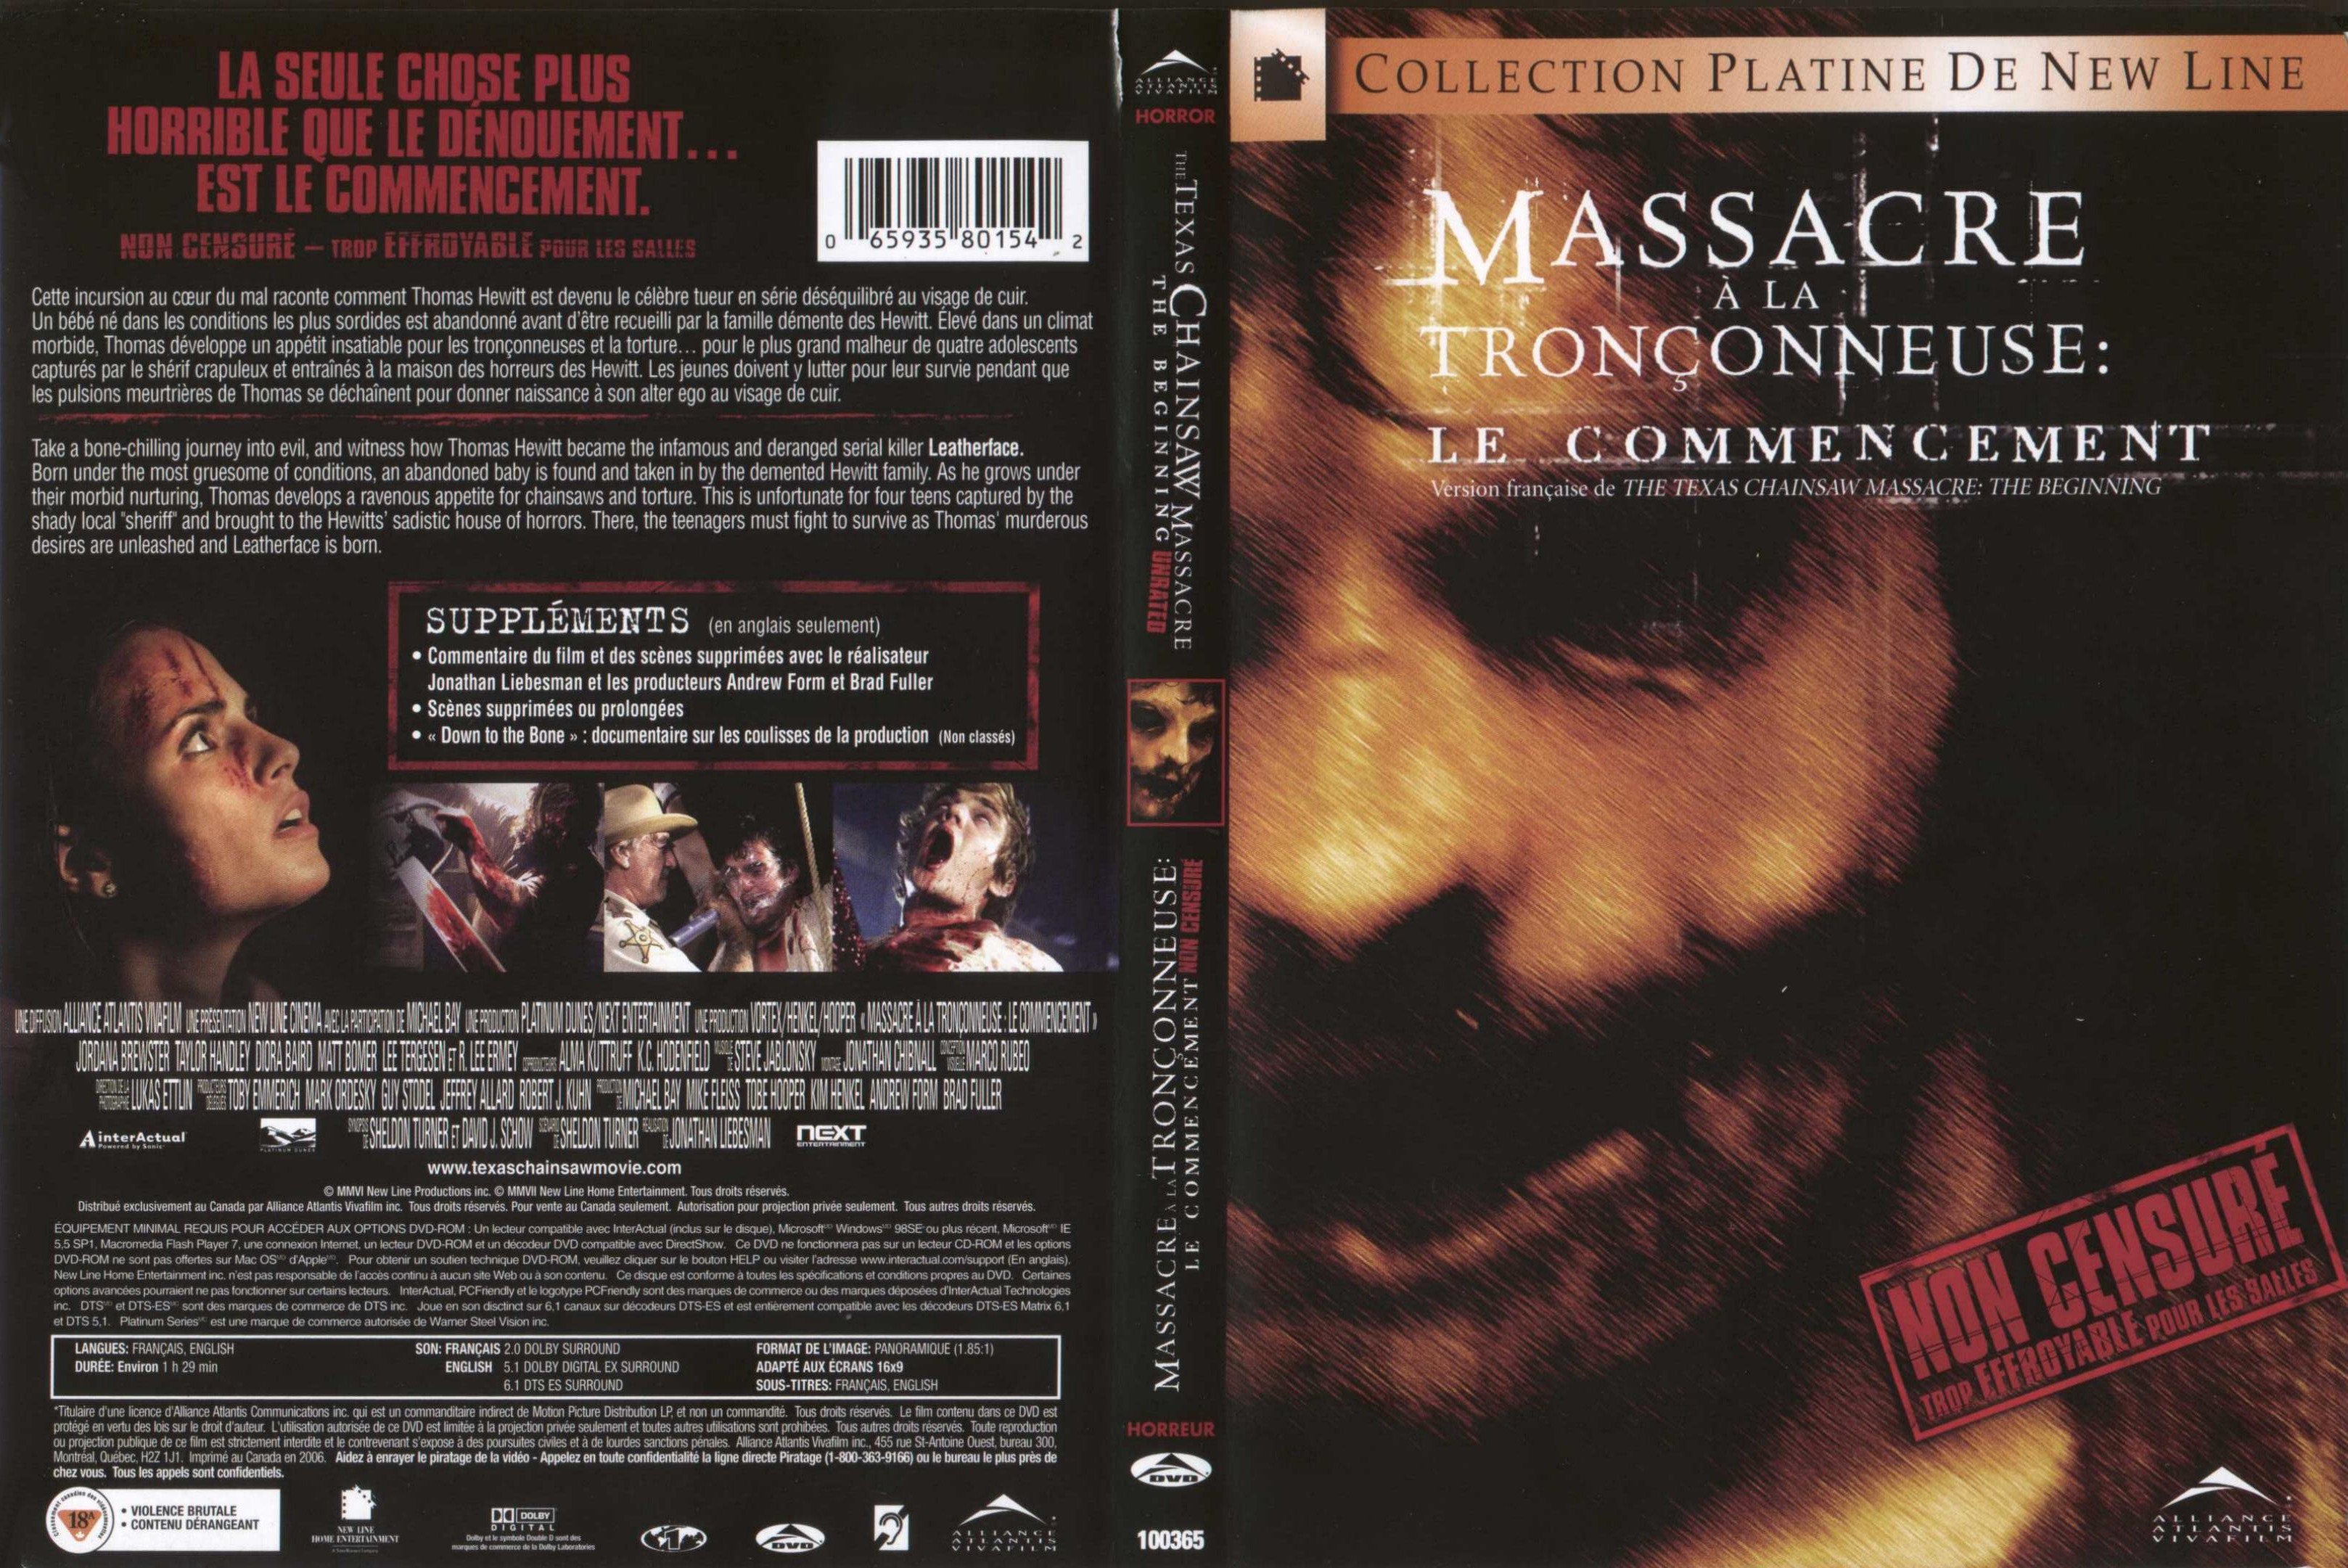 Jaquette DVD Massacre a la tronconneuse le commencement Zone 1